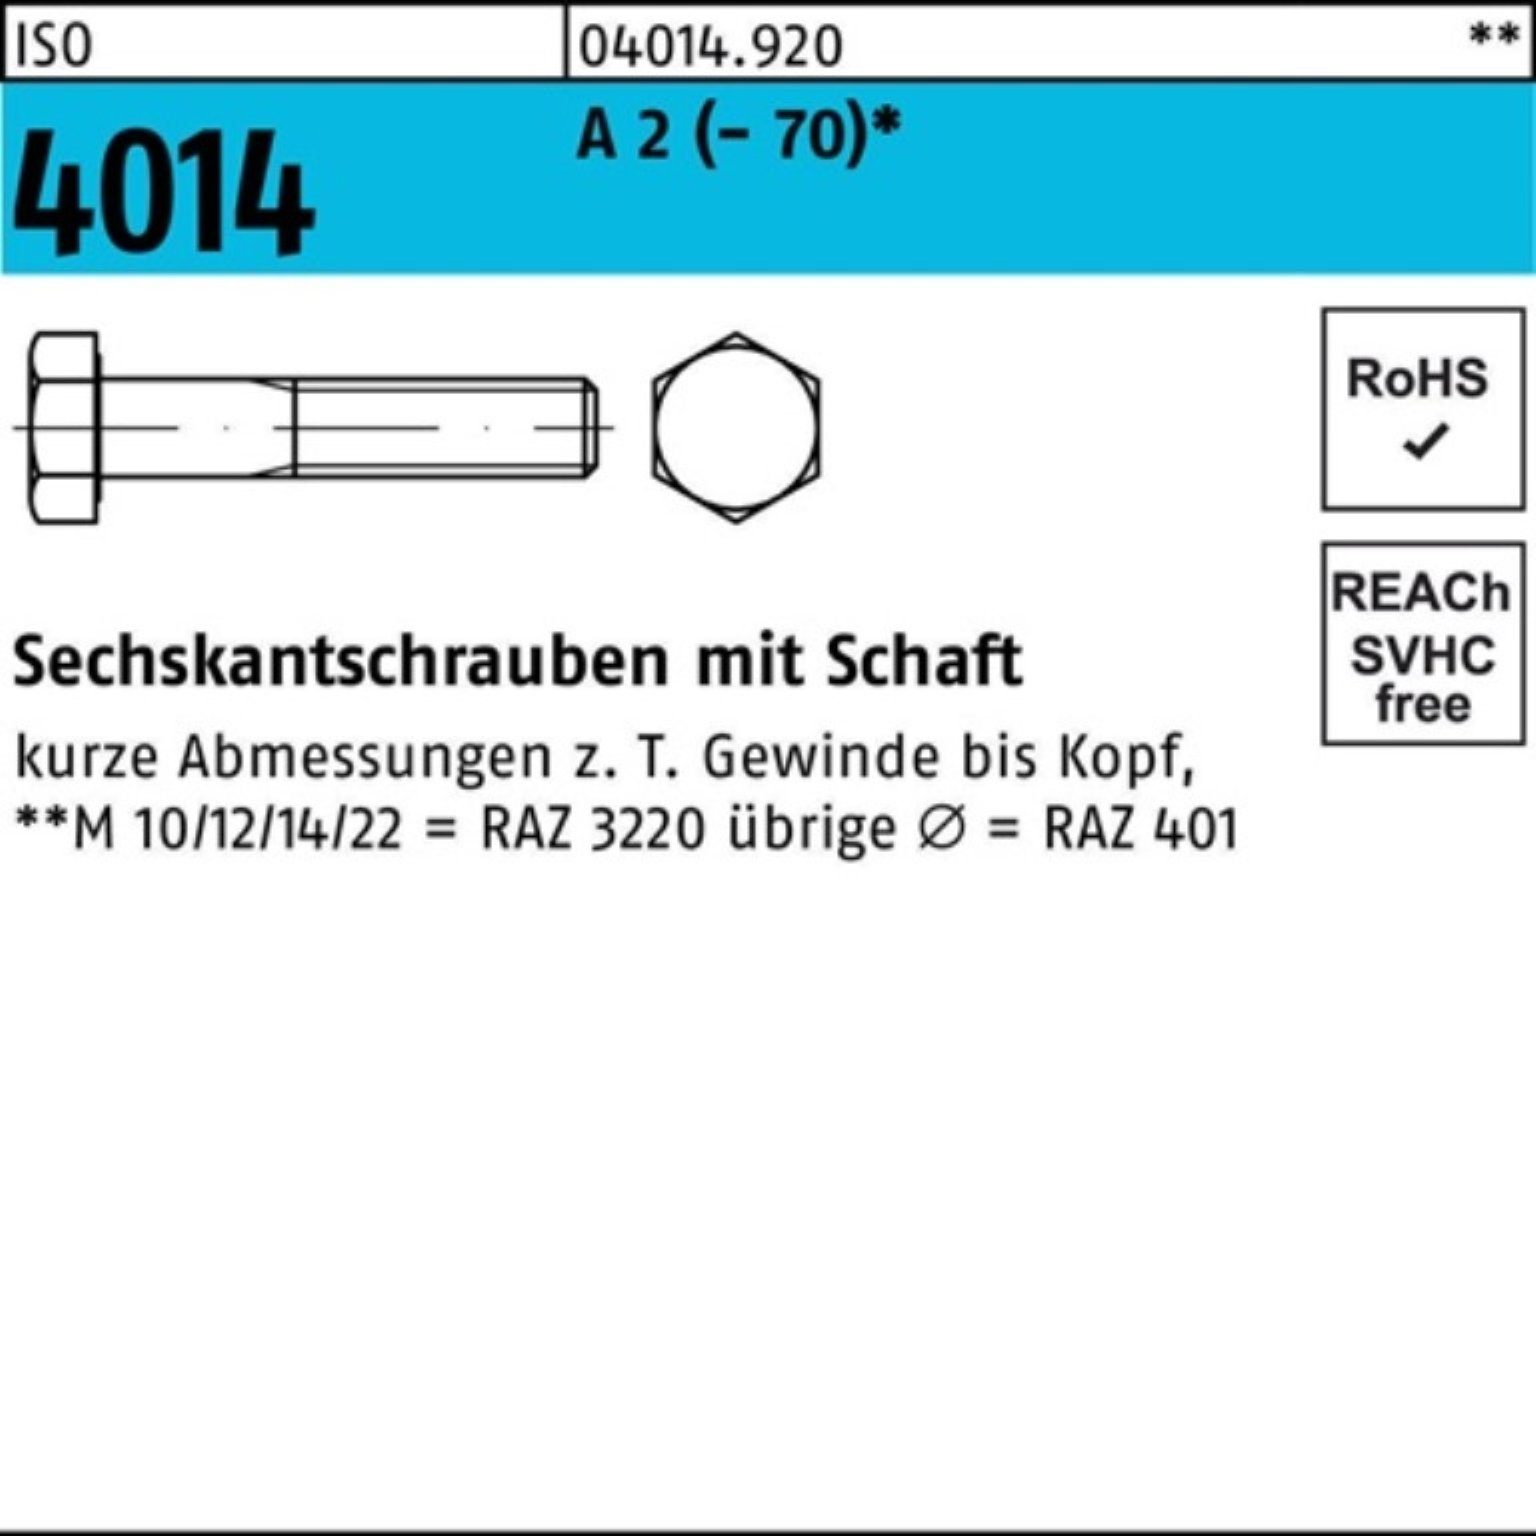 A Sechskantschraube Bufab Sechskantschraube 100er St M24x 1 (70) 2 Schaft 180 Pack 4014 ISO